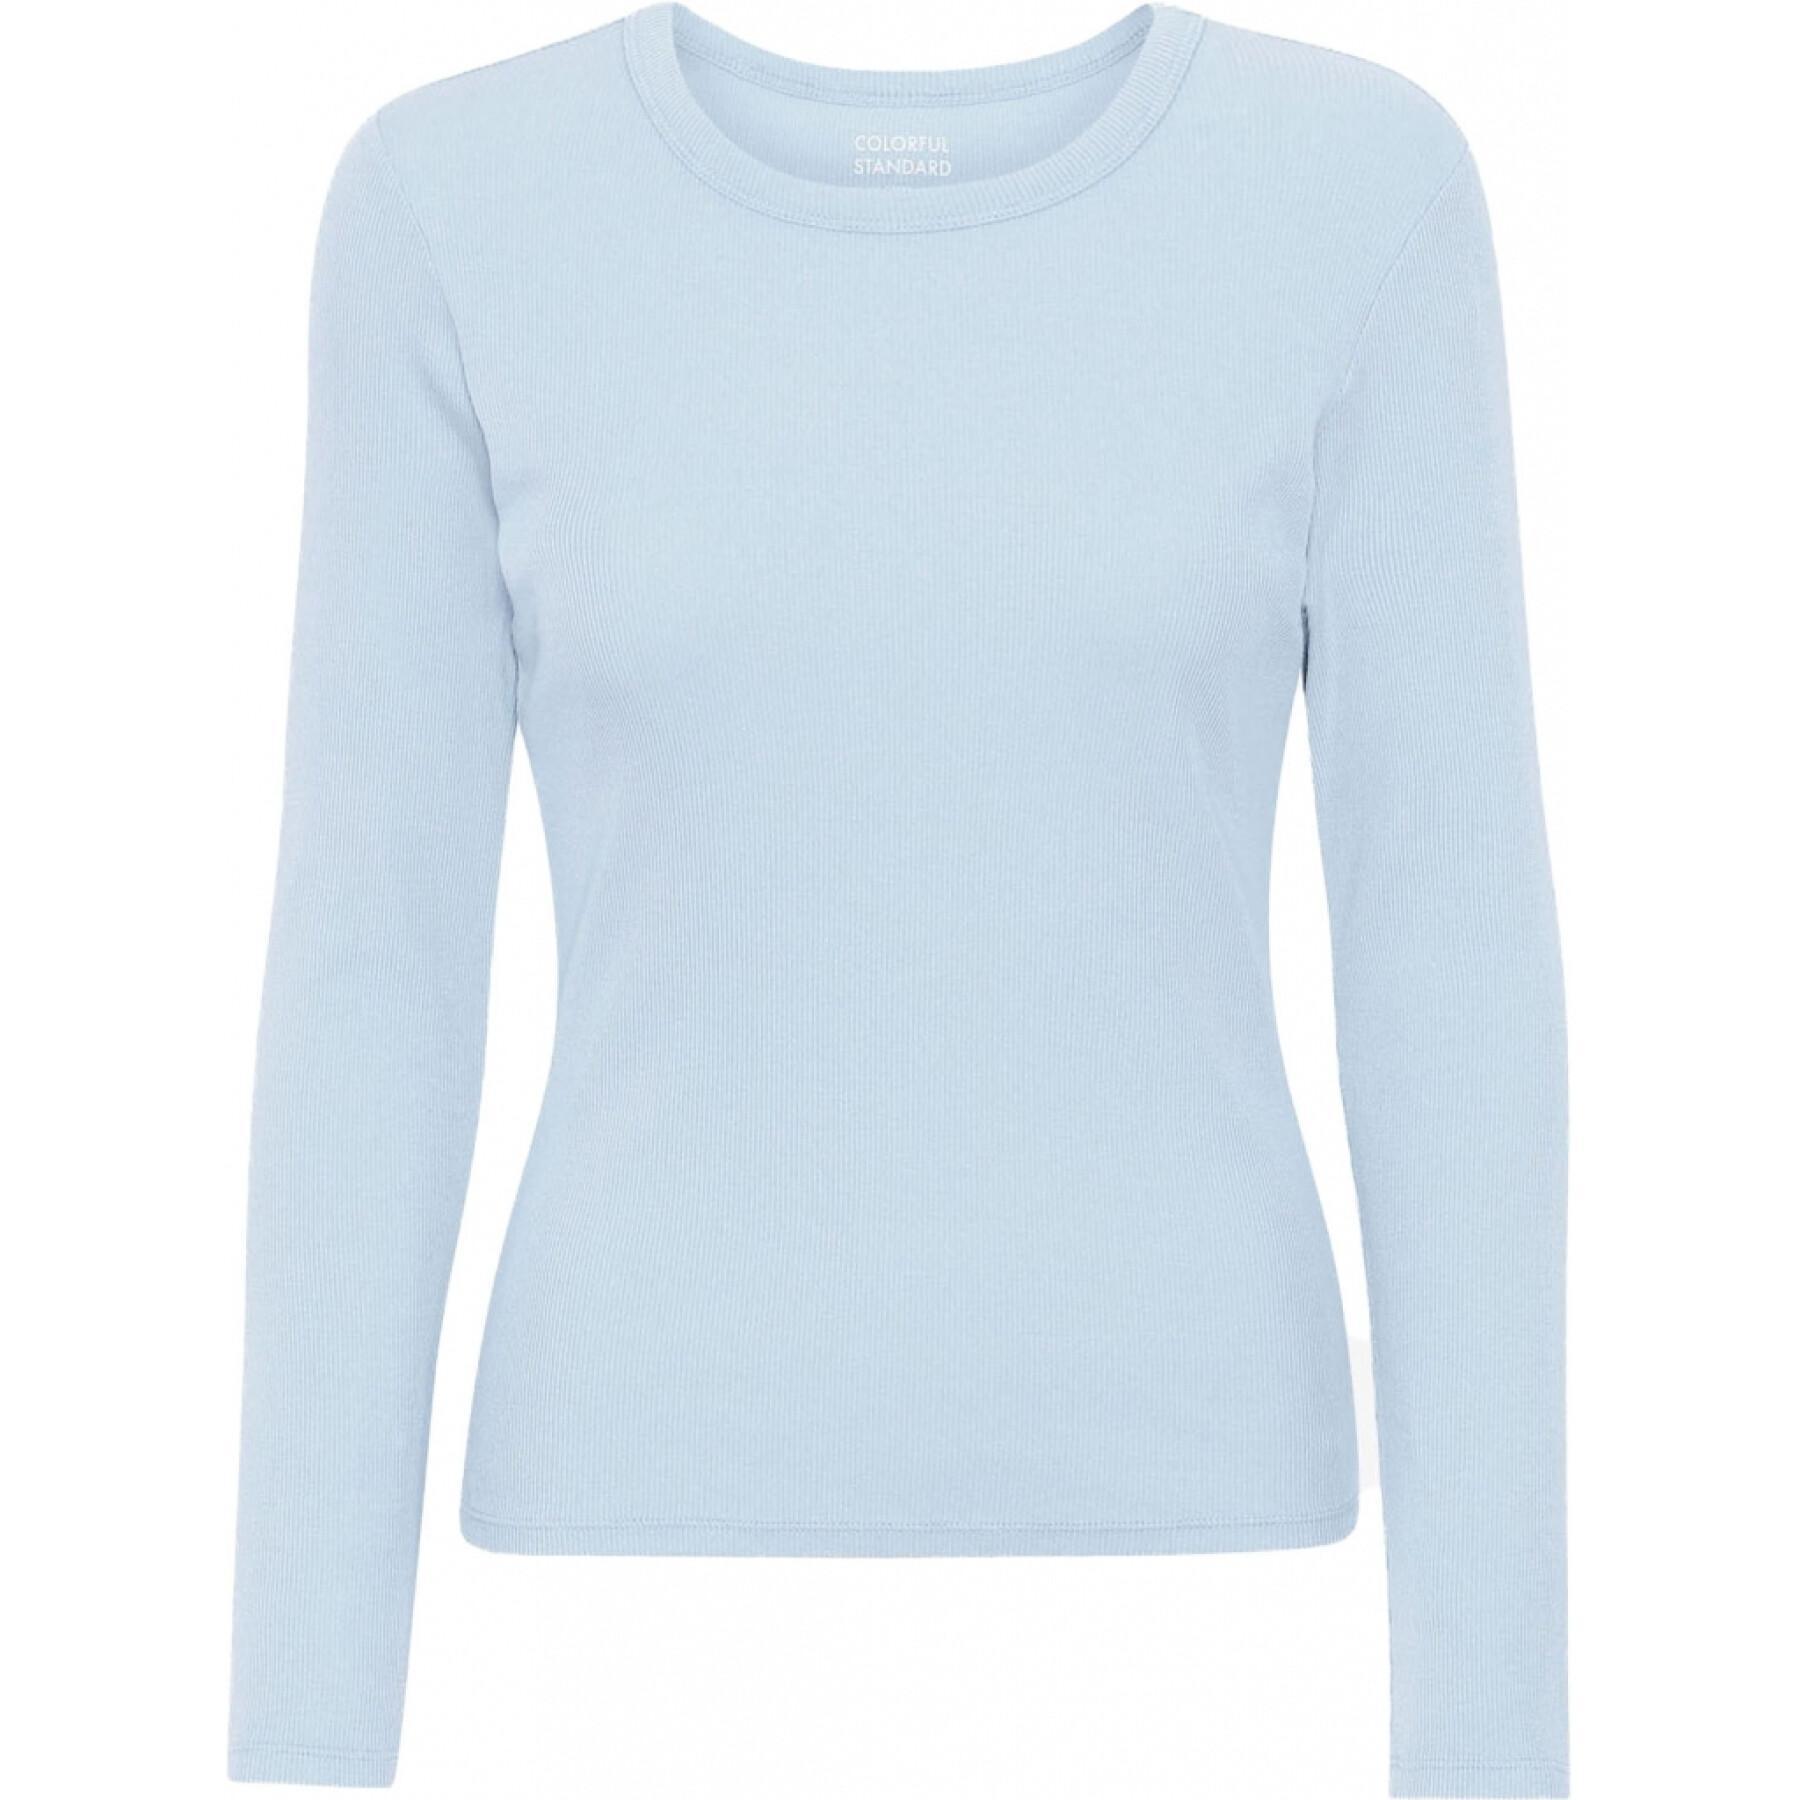 T-shirt côtelé manches longues femme Colorful Standard Organic polar blue